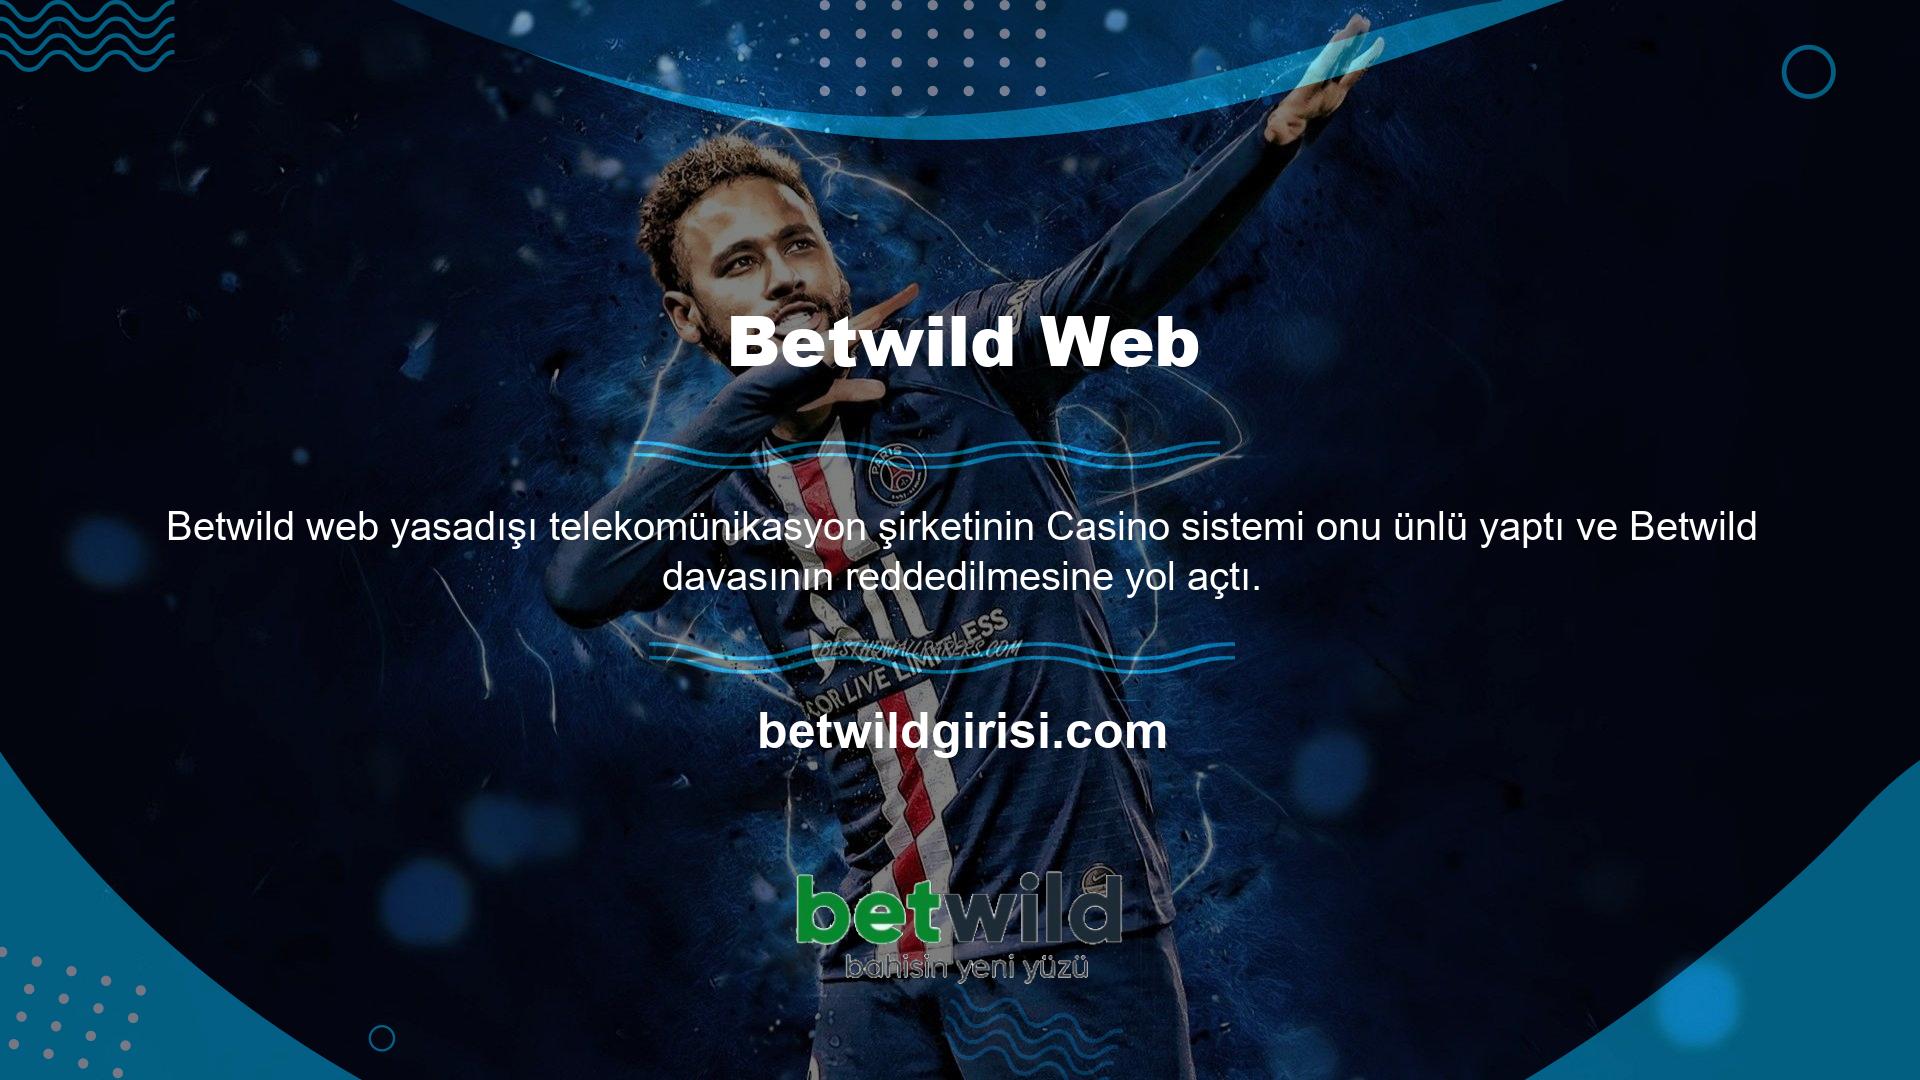 Üyeler, Betwild web sitesi üzerinden bonus veya mali teşvik uygulayabilir ve satın alabilirler